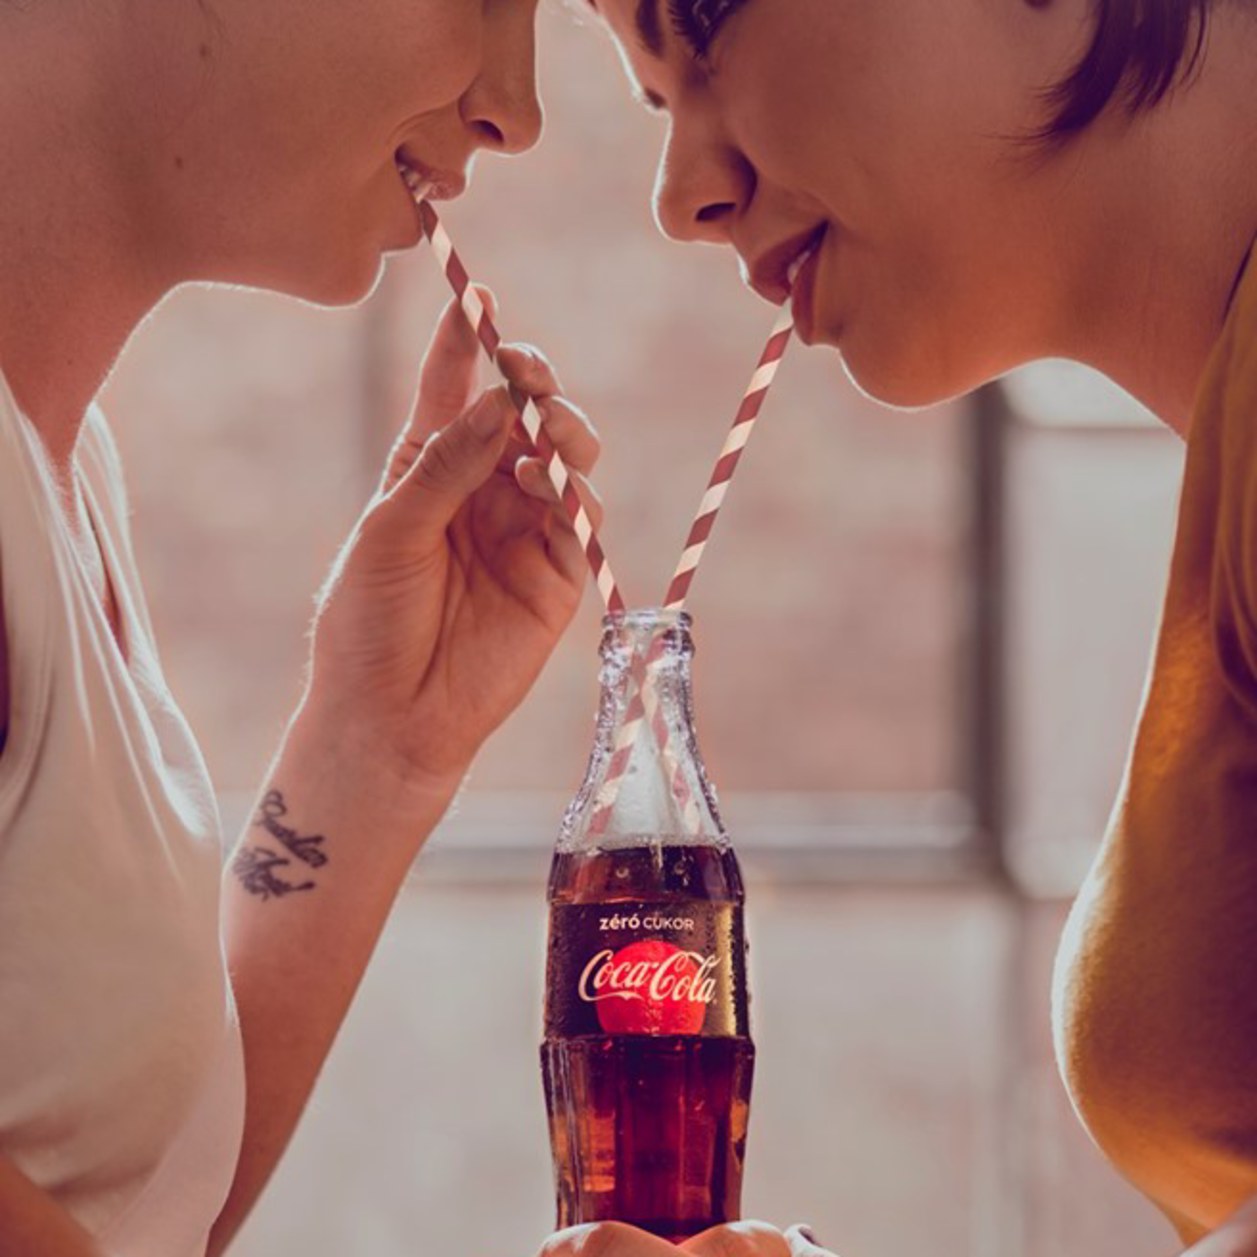 En Hongrie, Coca-Cola lance une pub avec des couples LGBT et crée la polémique